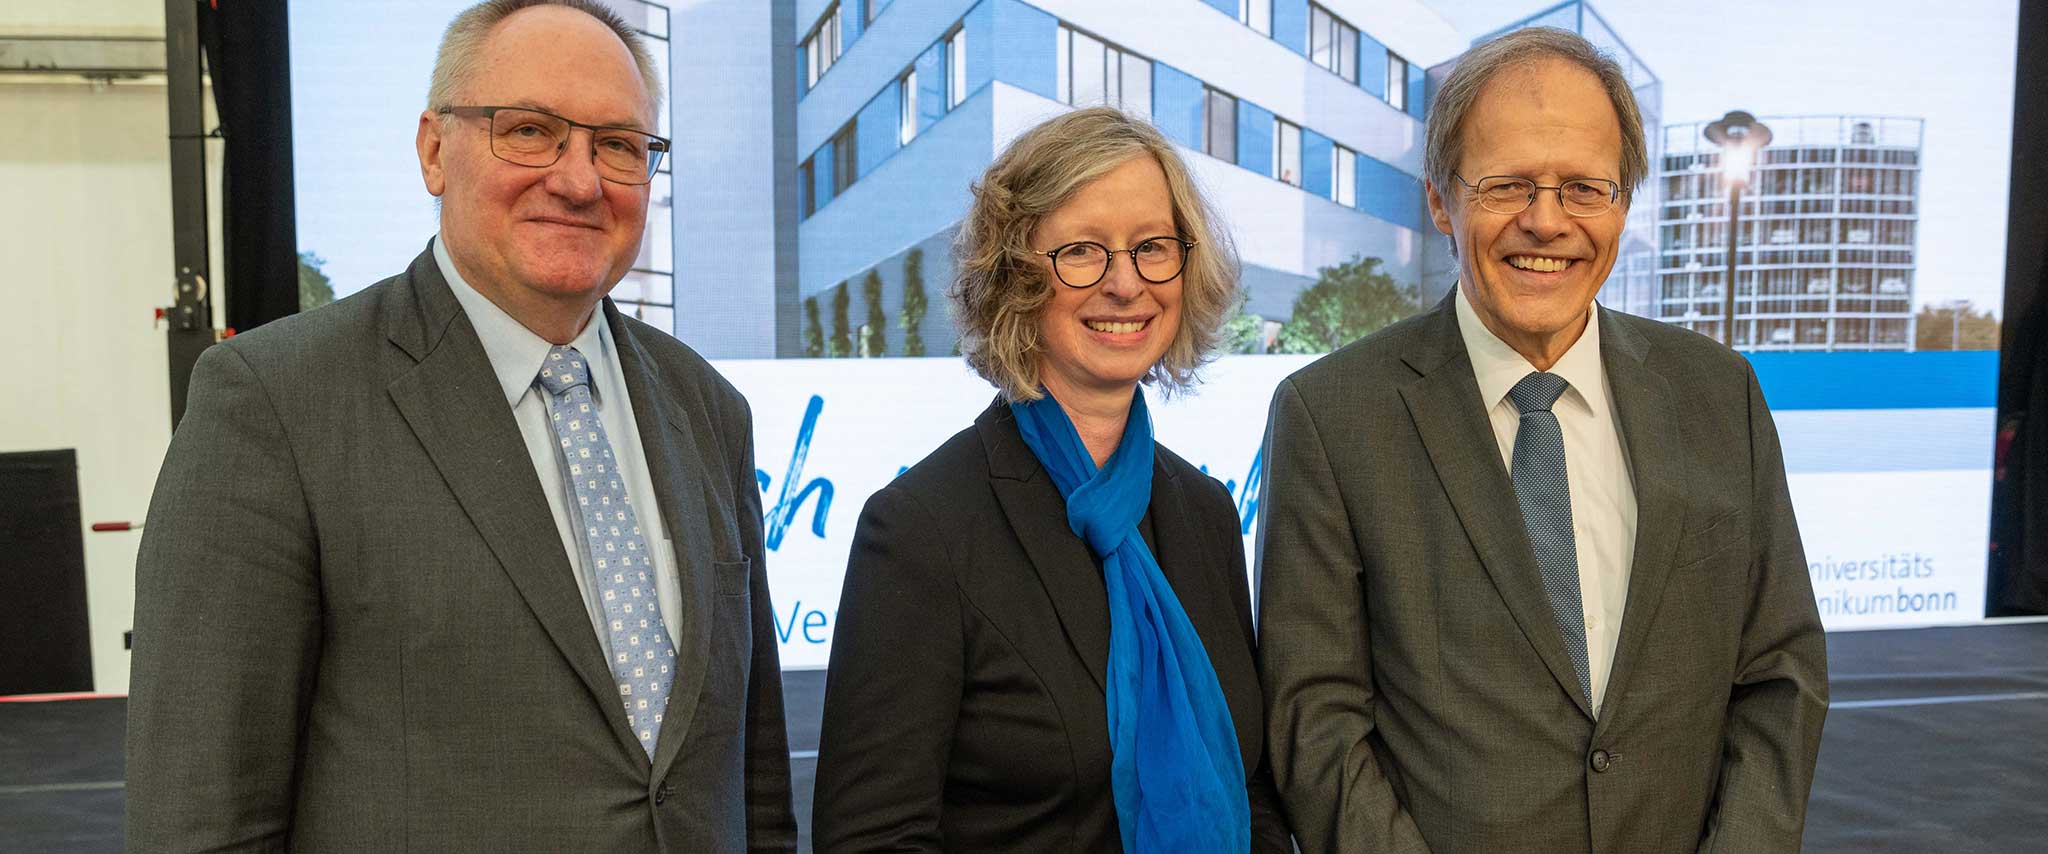 Rekord-Besucherzahlen beim Patienteninformationstag zur Einweihung des neuen Hämophilie-Zentrums am Universitätsklinikum Bonn